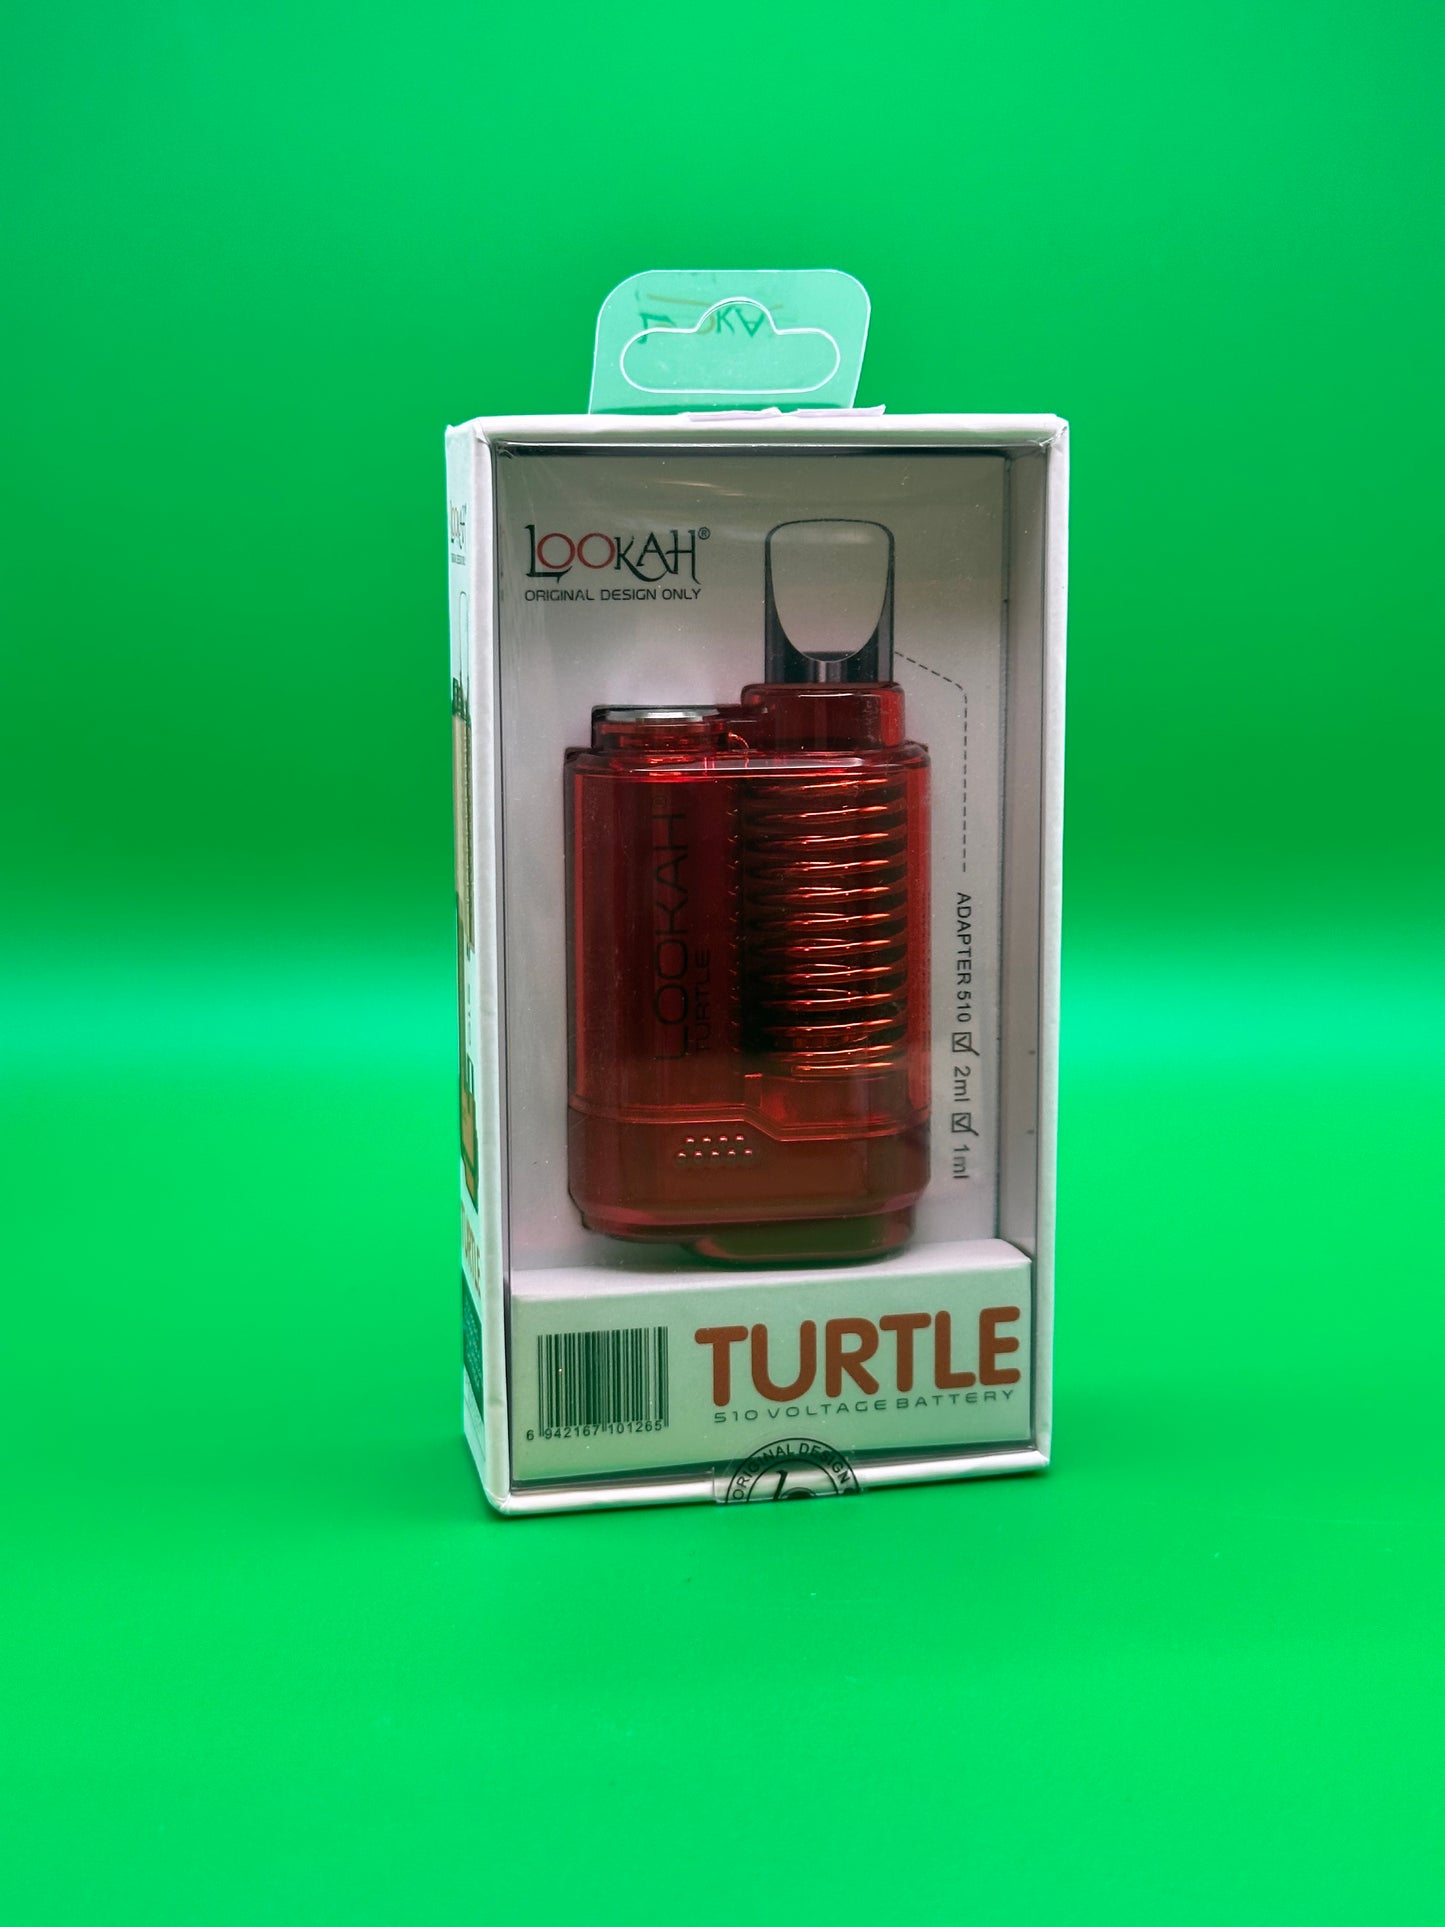 Lookah | Turtle 510 Battery